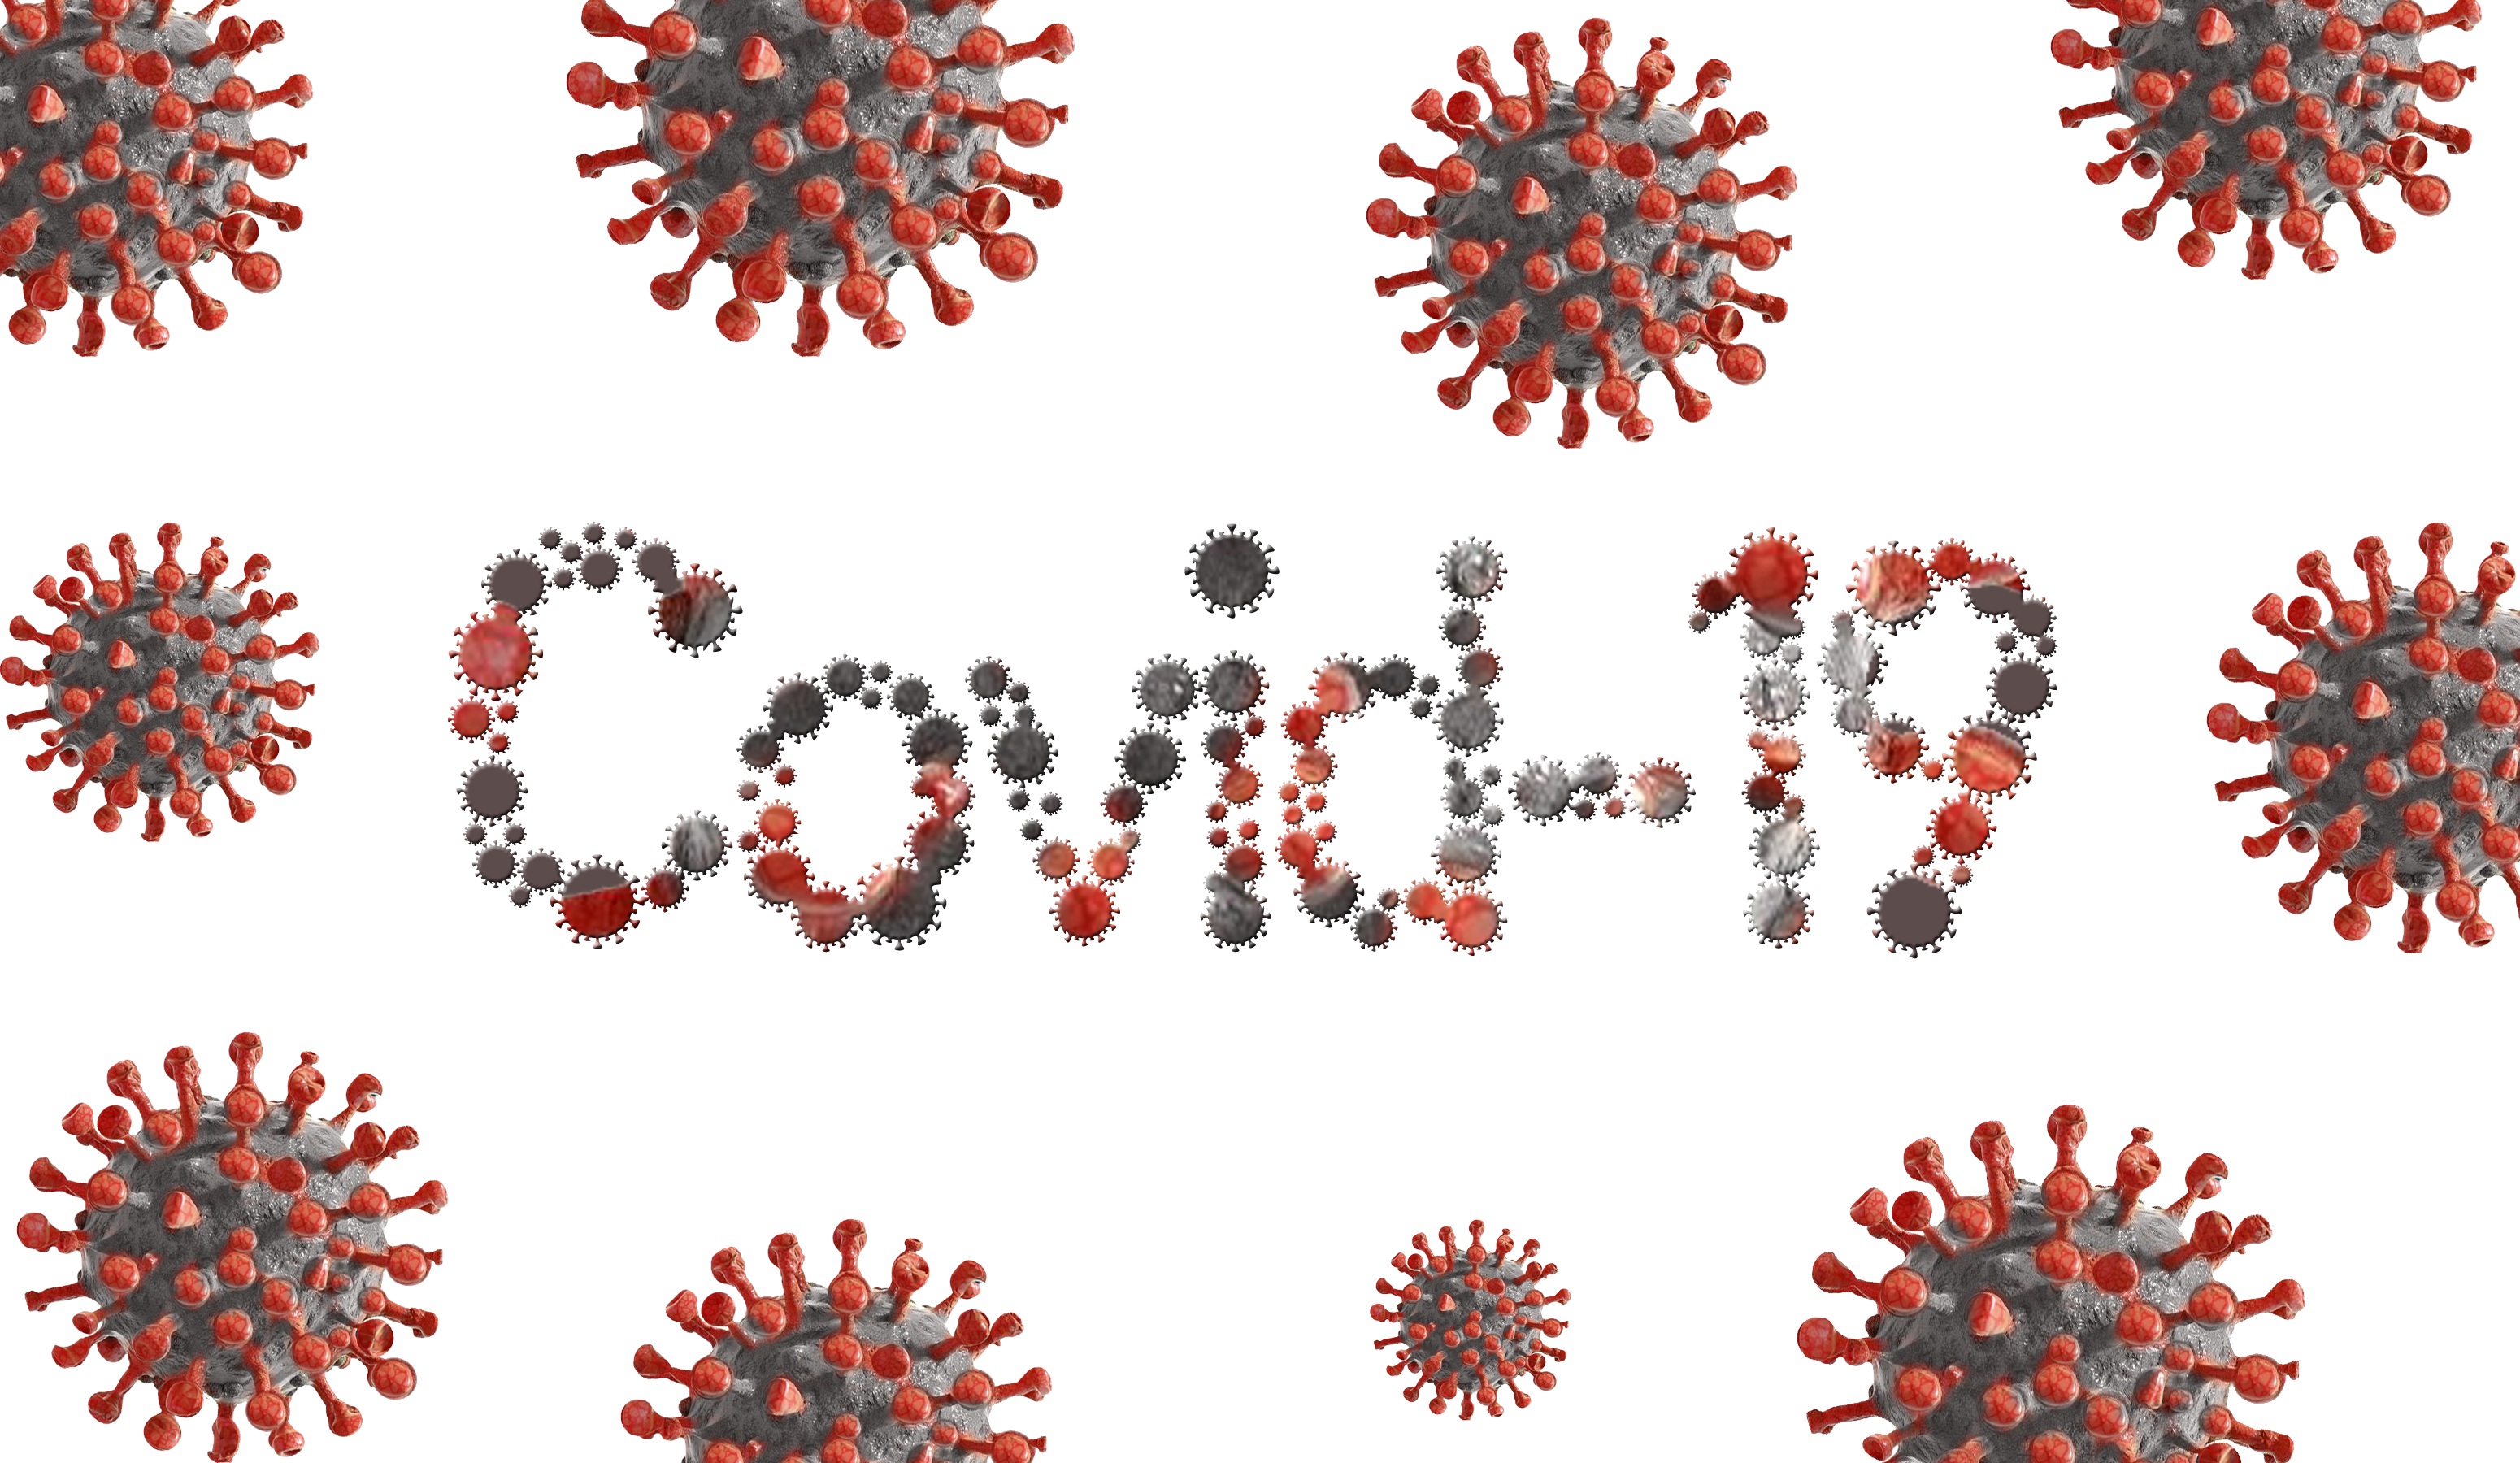 Ковид 15. Вирус Covid-19. Вирус коронавирус ковид-19. Вирус на белом фоне. Вирусы картинки.